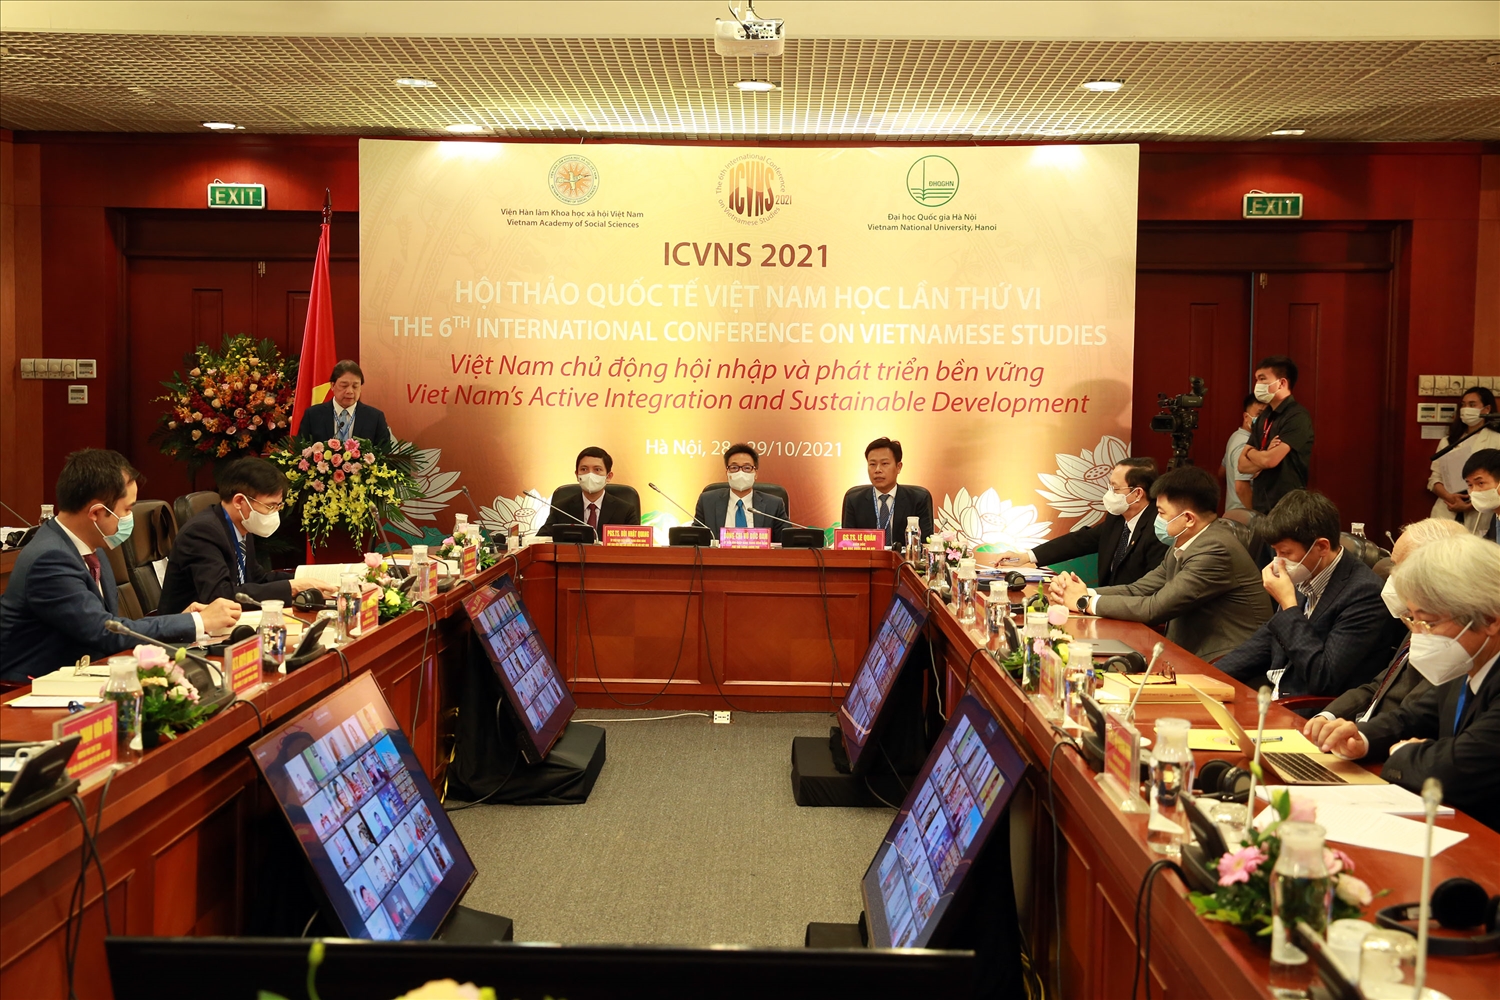 Các kỳ hội thảo quốc tế Việt Nam học luôn nhất quán mục tiêu vì sự phát triển bền vững của Việt Nam và góp phần vào hòa bình, hợp tác, phát triển bền vững của cả khu vực và thế giới. Ảnh: VGP/Đình Nam